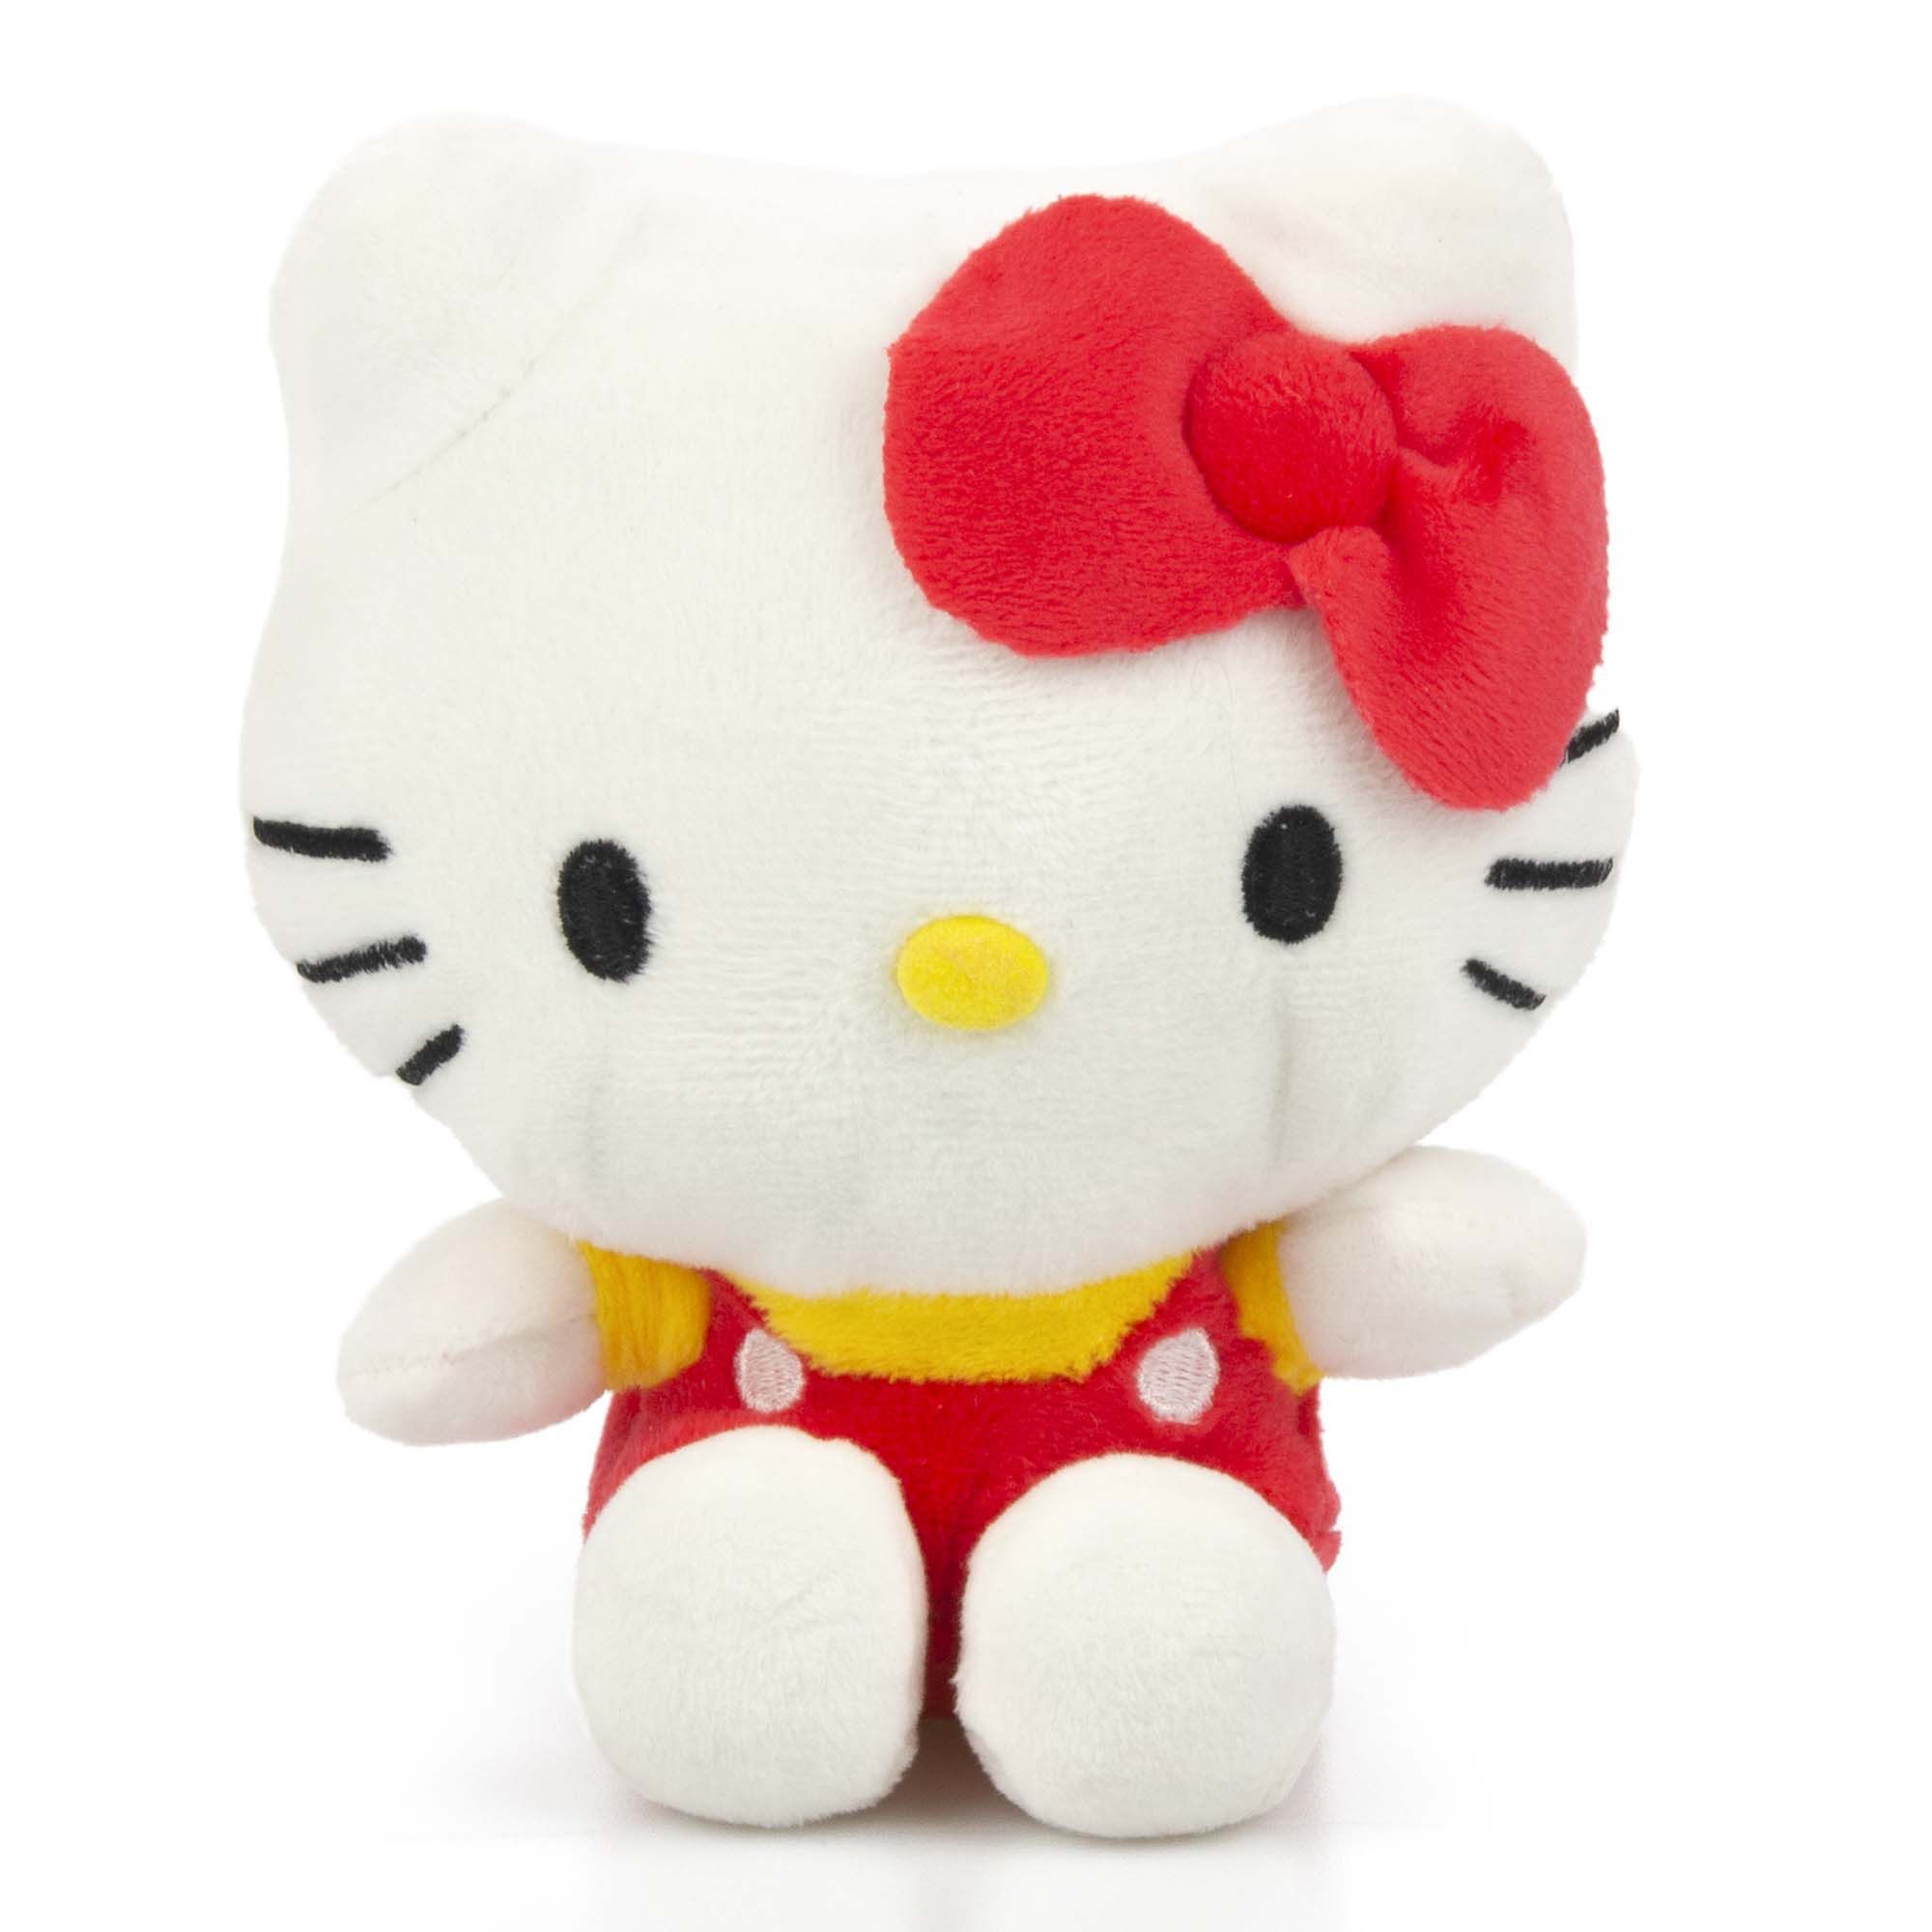 Tinisu Plüschfigur Hello Kitty Plüschtier - 18 cm Kuscheltier Kinder weiches Stofftier